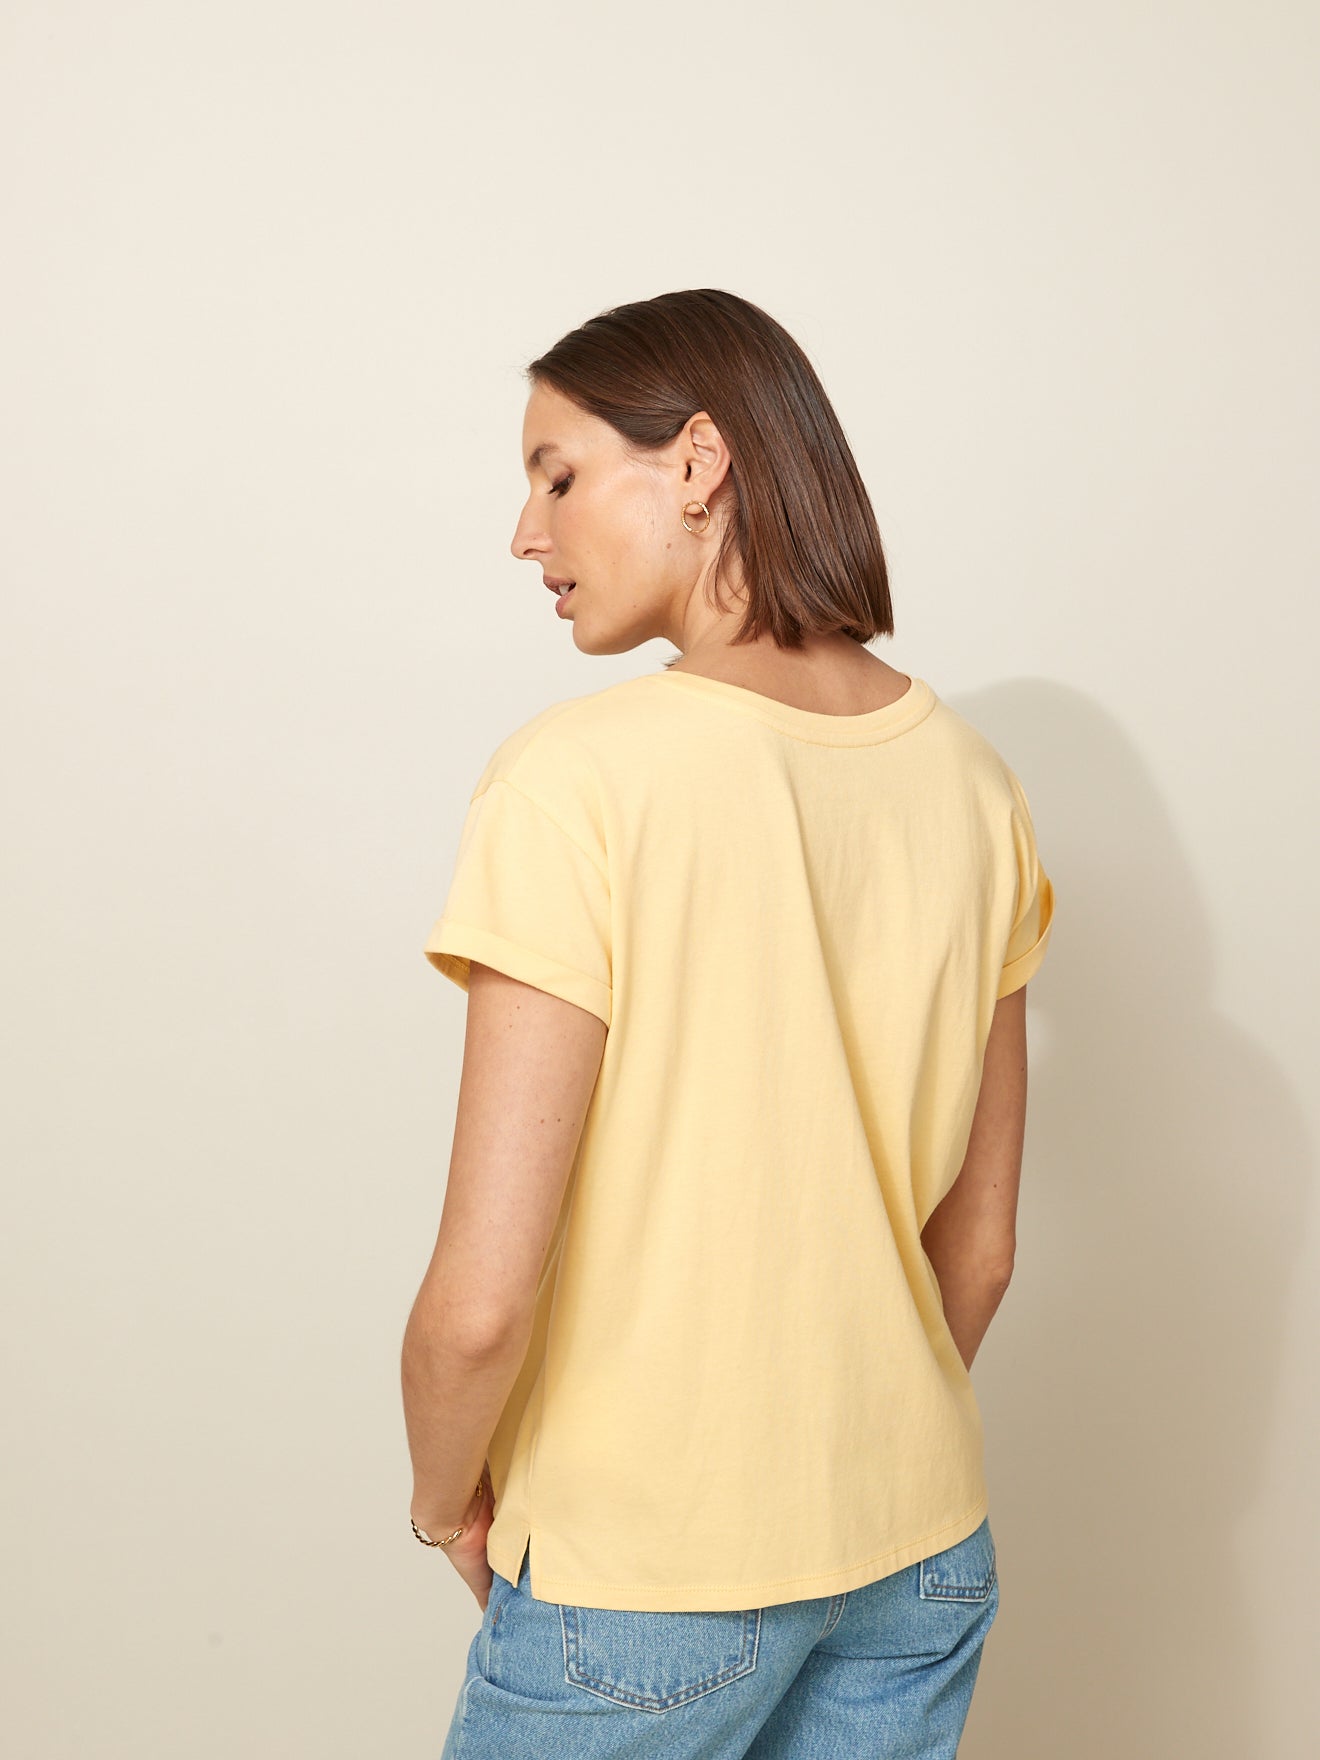 T-shirt manches courtes femme - coton biologique